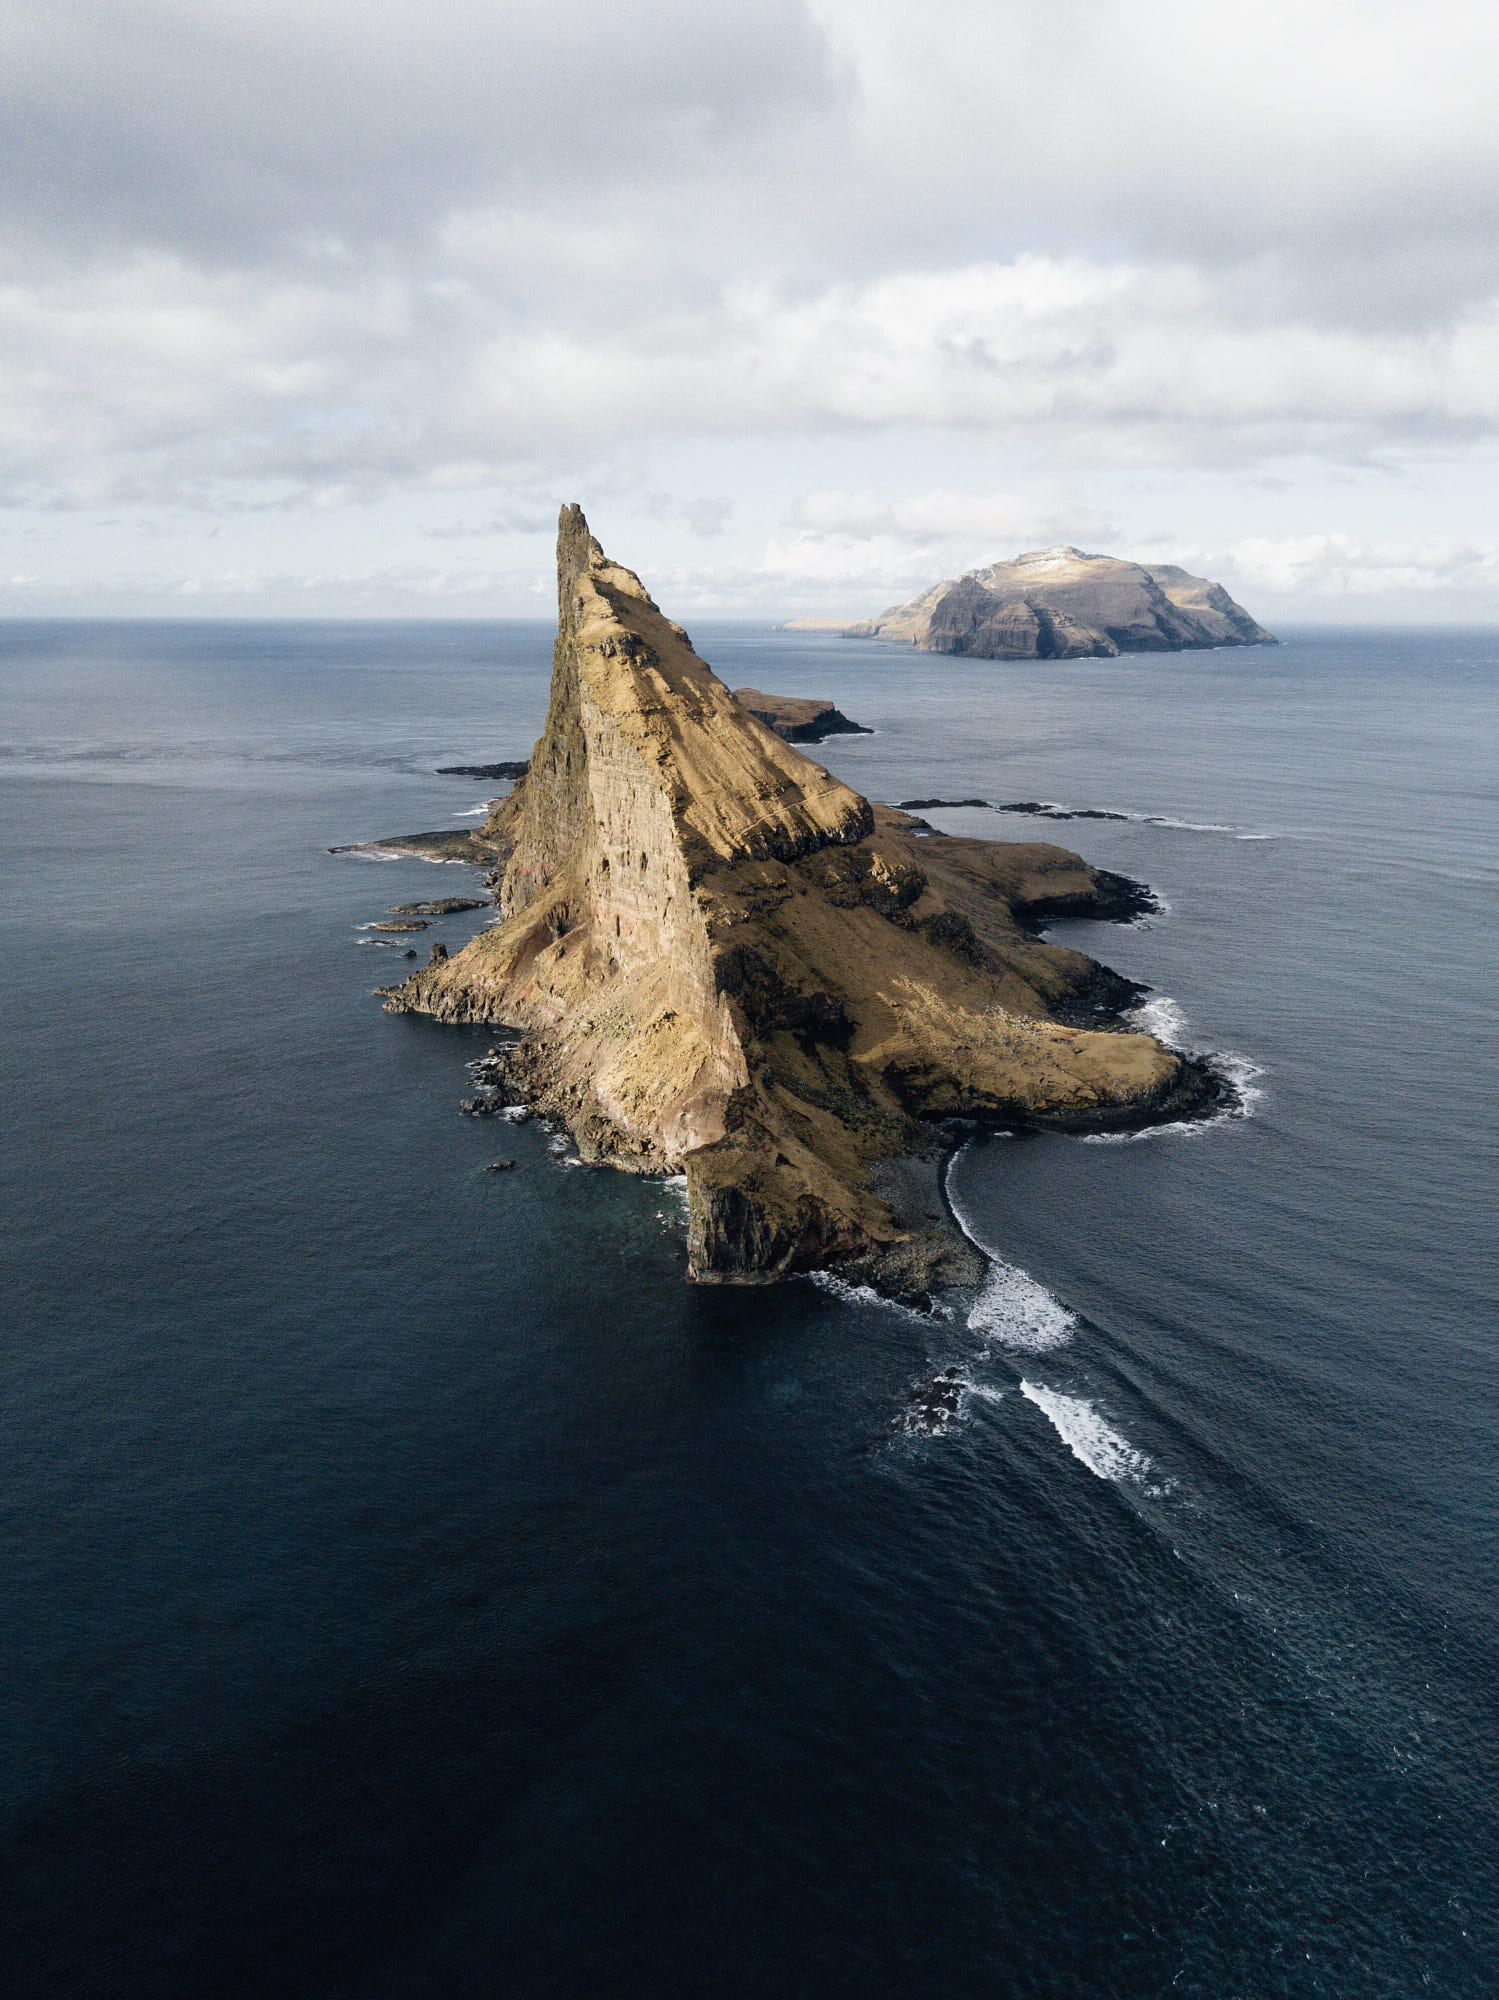 Join my Faroe Islands Workshop 
https://lyesk.com/faroe-islands-workshop